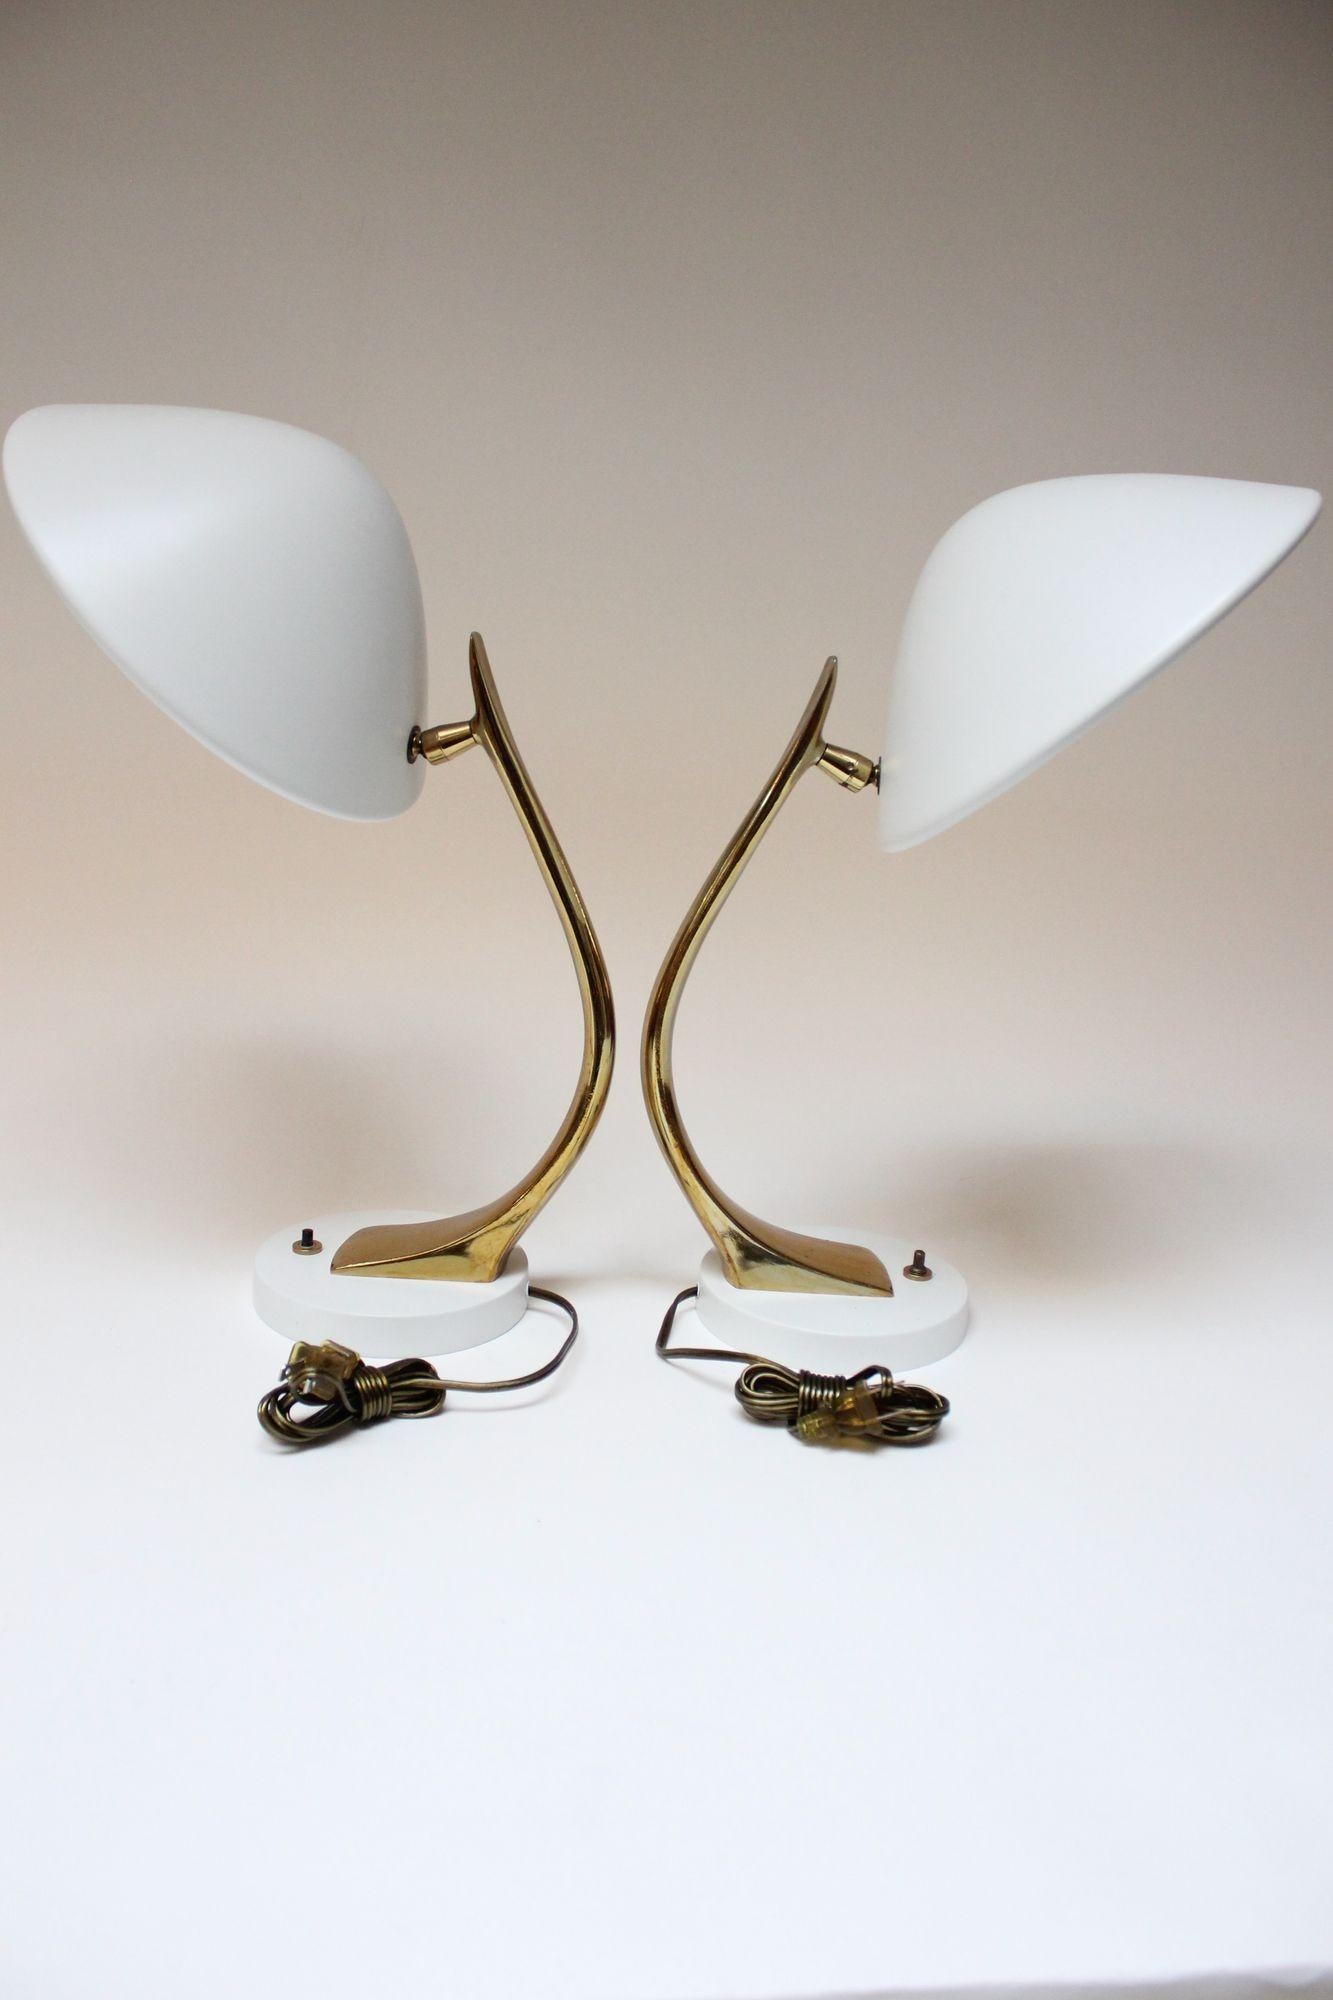 Moderne Laurel Lamp Co. Tischlampen aus emailliertem Metall und Messing (ca. 1960er Jahre, USA). Der geschwungene, messingfarbene Metallschaft beherbergt einen gewölbten, matt-weißen Metallschirm, der von einem runden Metallsockel getragen wird.